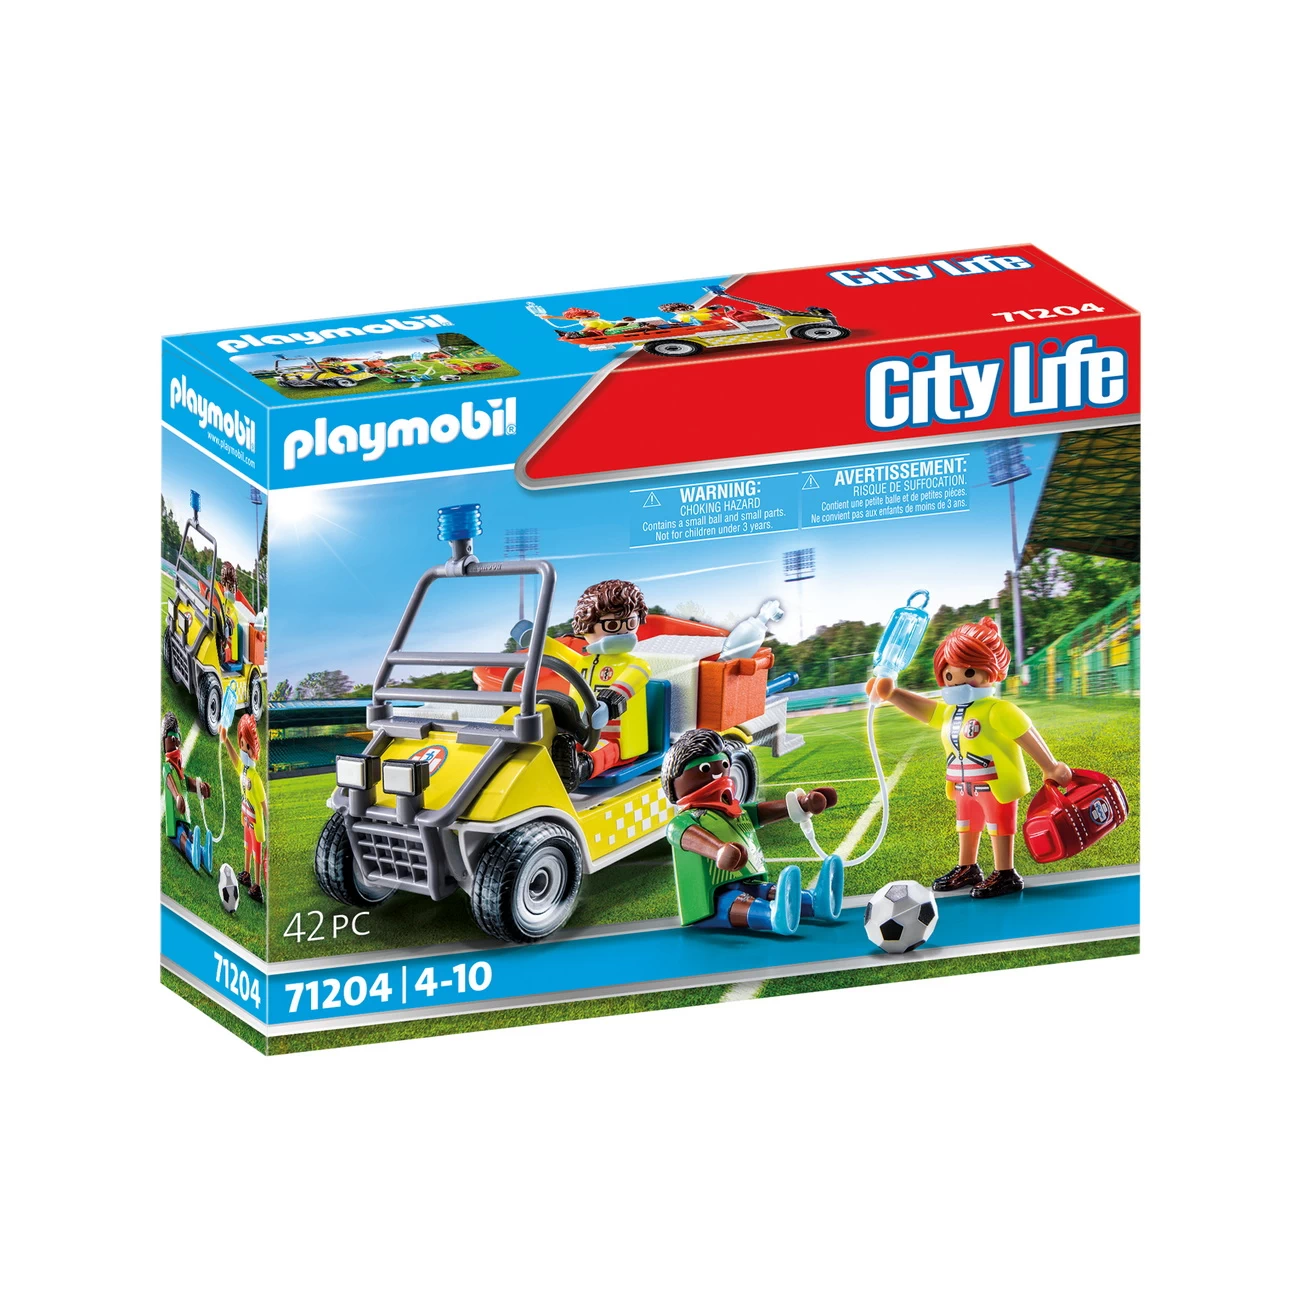 Playmobil 71204 - Rettungscaddy Notarzt - City Life